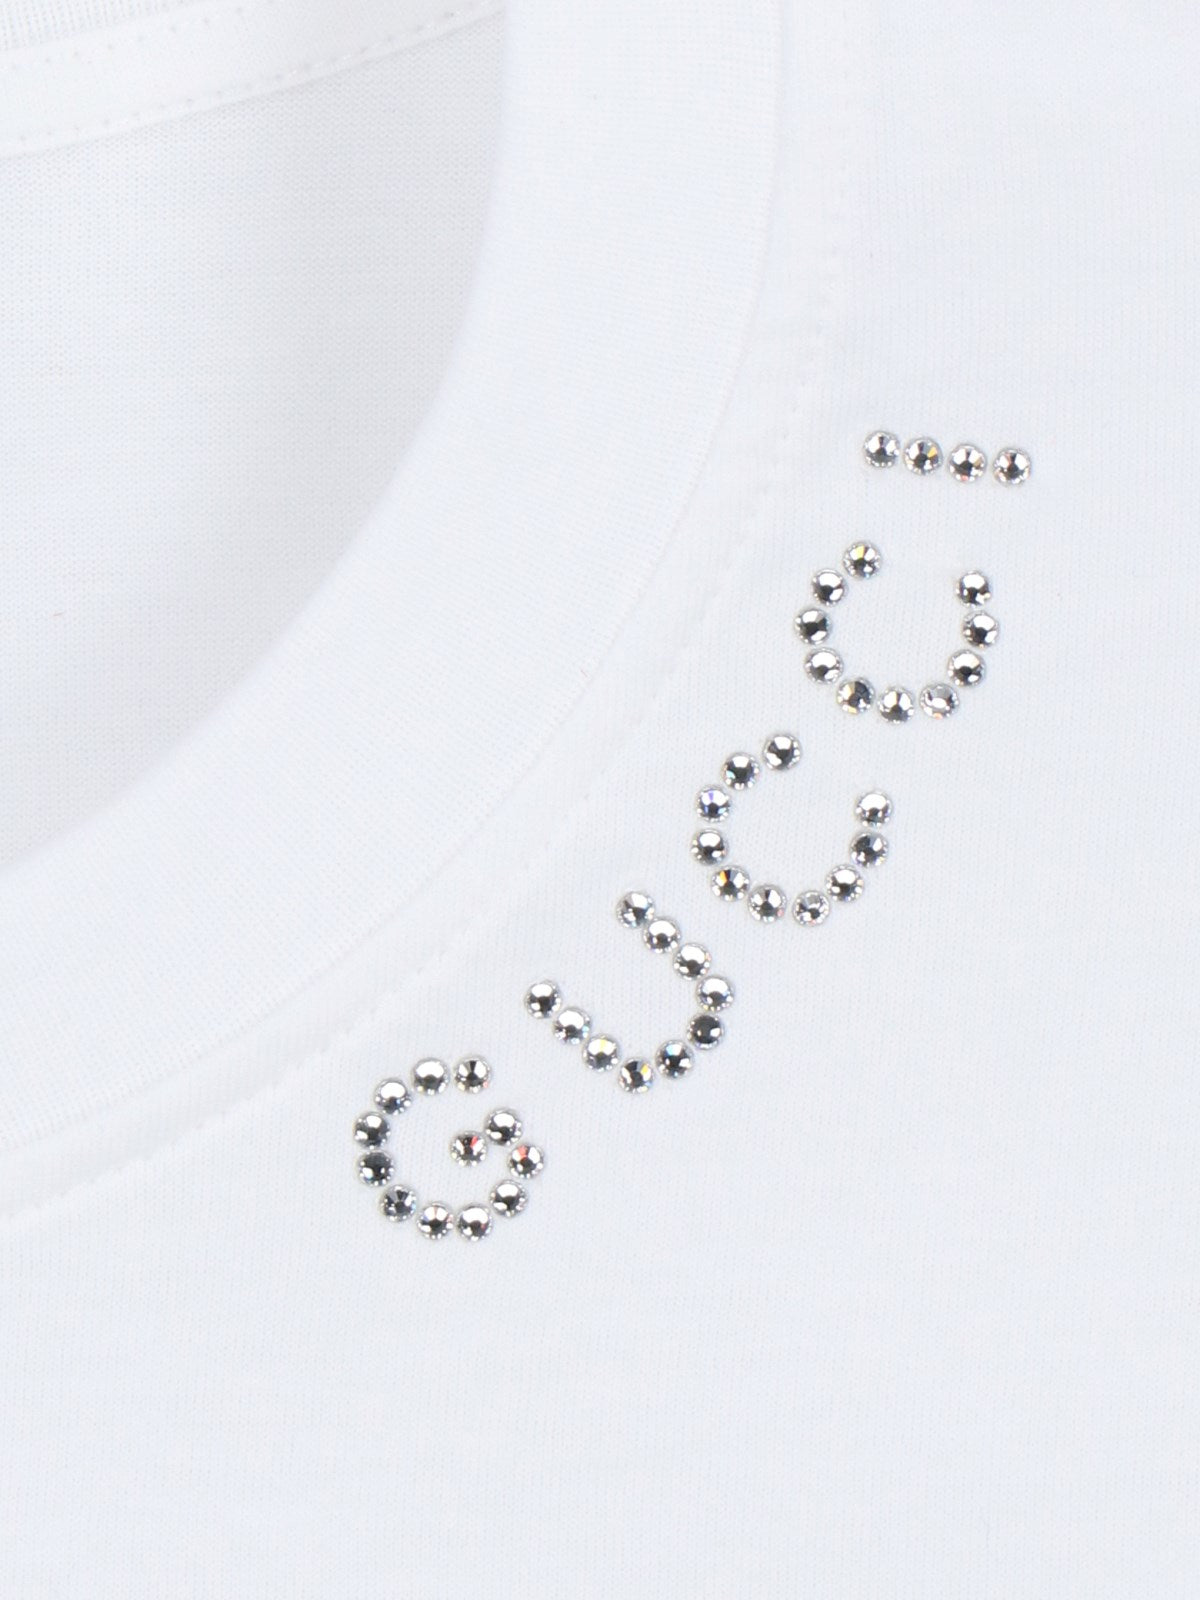 Gucci T-Shirt logo-t-shirt-Gucci-T-shirt logo Gucci, in cotone bianco, girocollo, maniche corte, dettaglio logo cristallo, orlo dritto.-Dresso